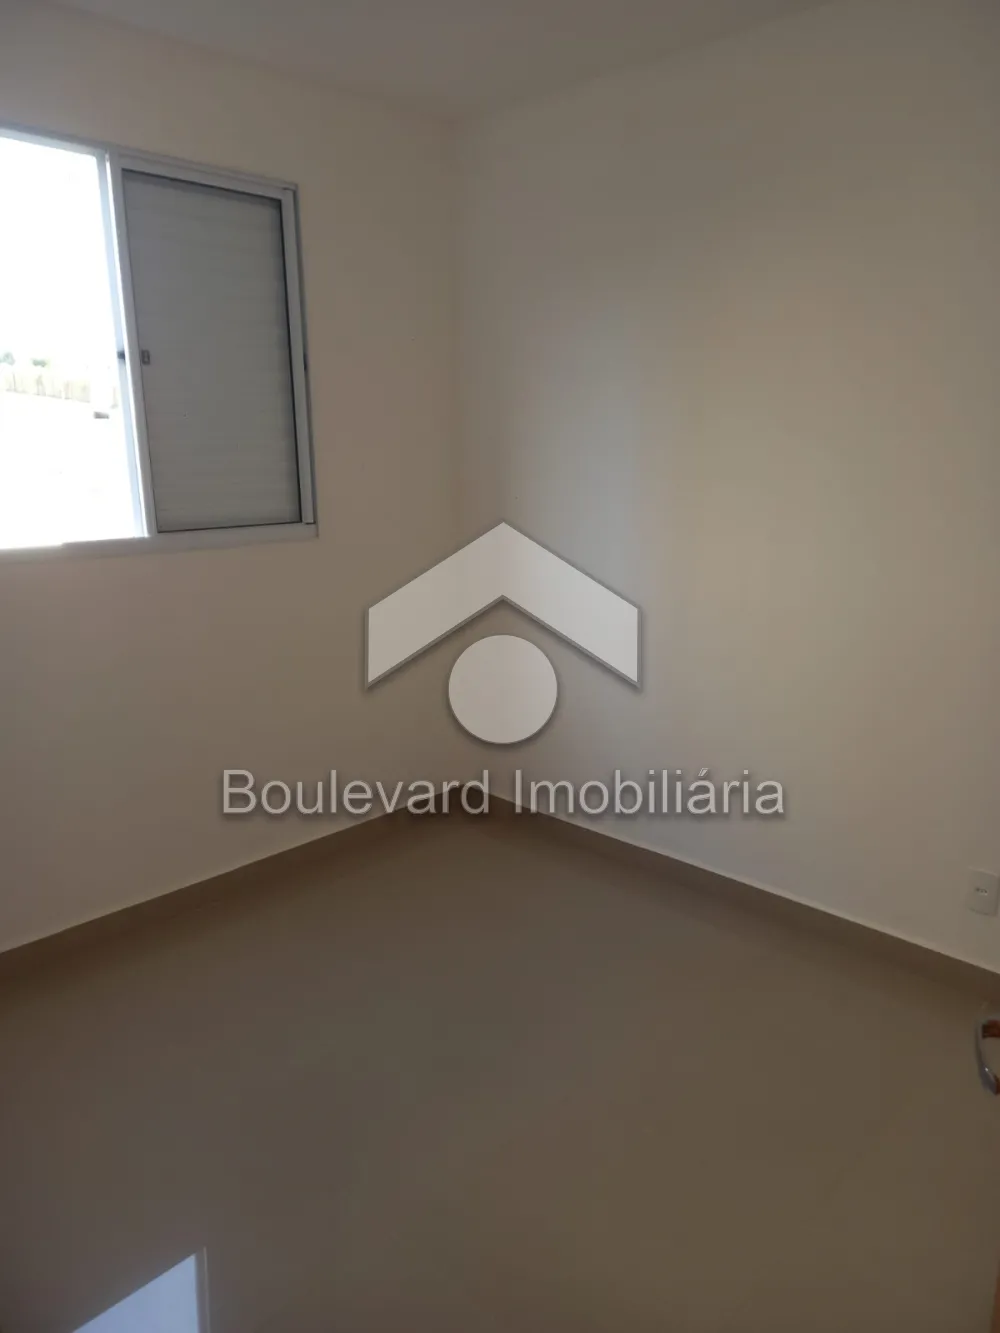 Comprar Apartamento / Padrão em Ribeirão Preto R$ 230.000,00 - Foto 5